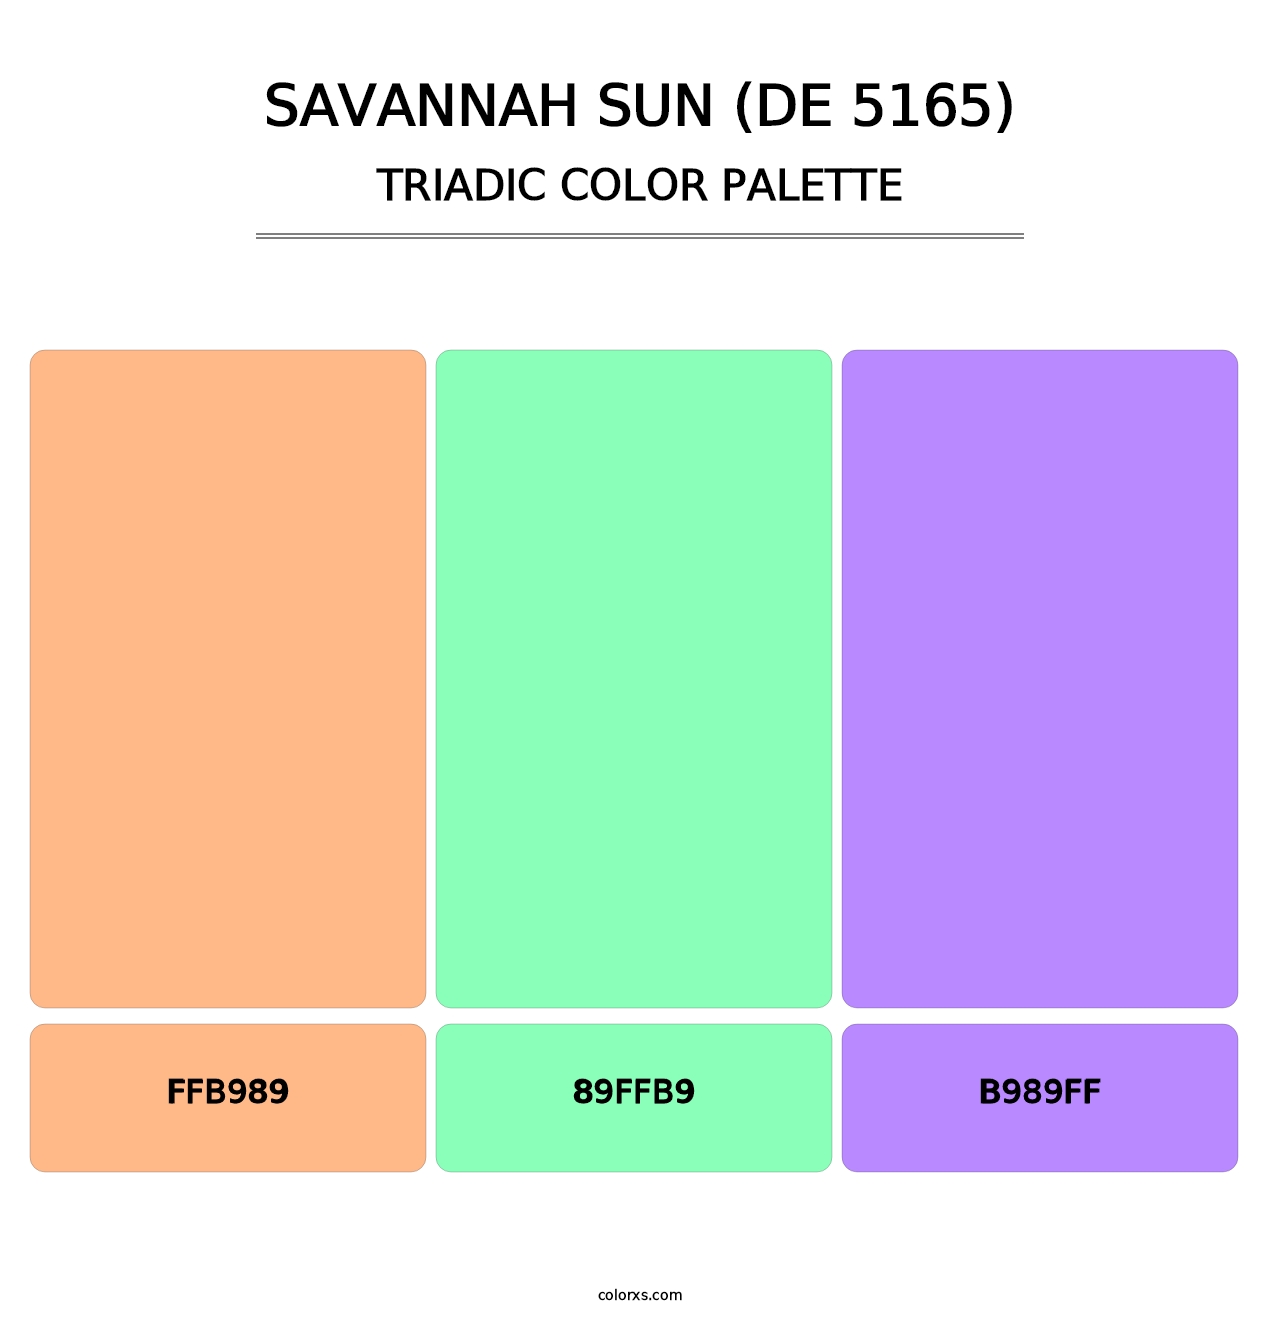 Savannah Sun (DE 5165) - Triadic Color Palette